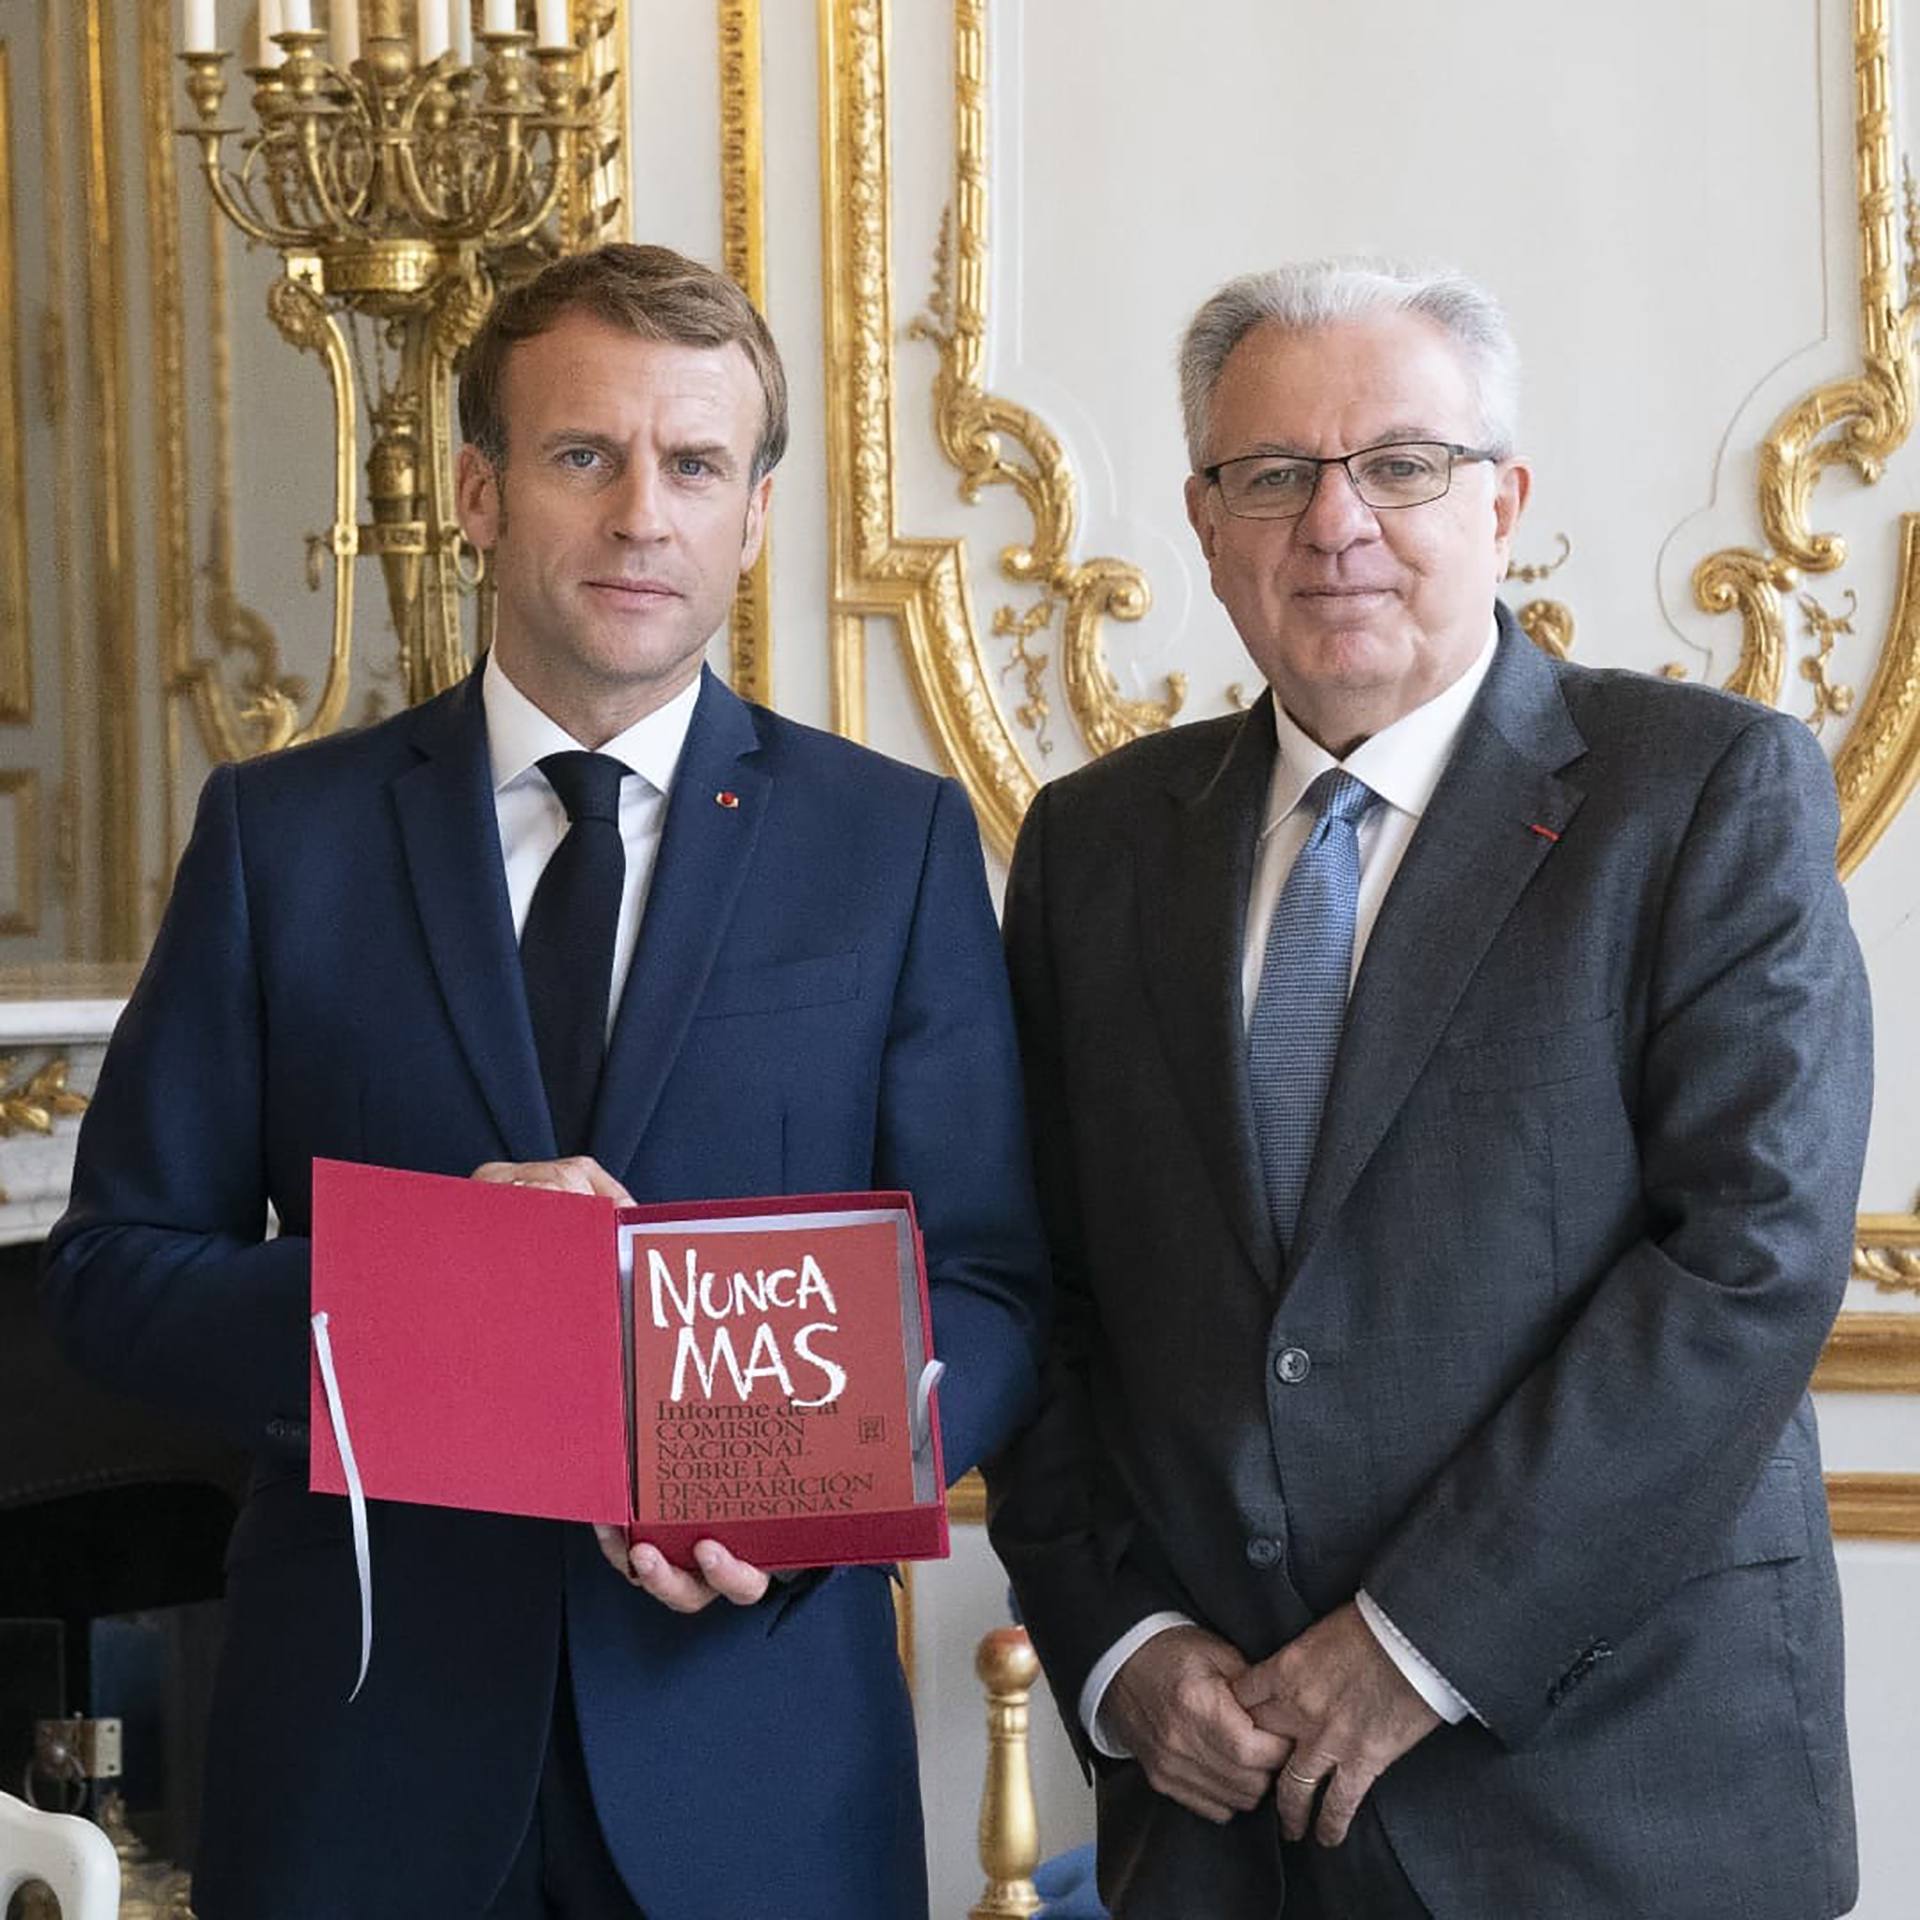 Barbieri le obsequió a Macron un ejemplar de "Nunca más" (Instagram UBA)